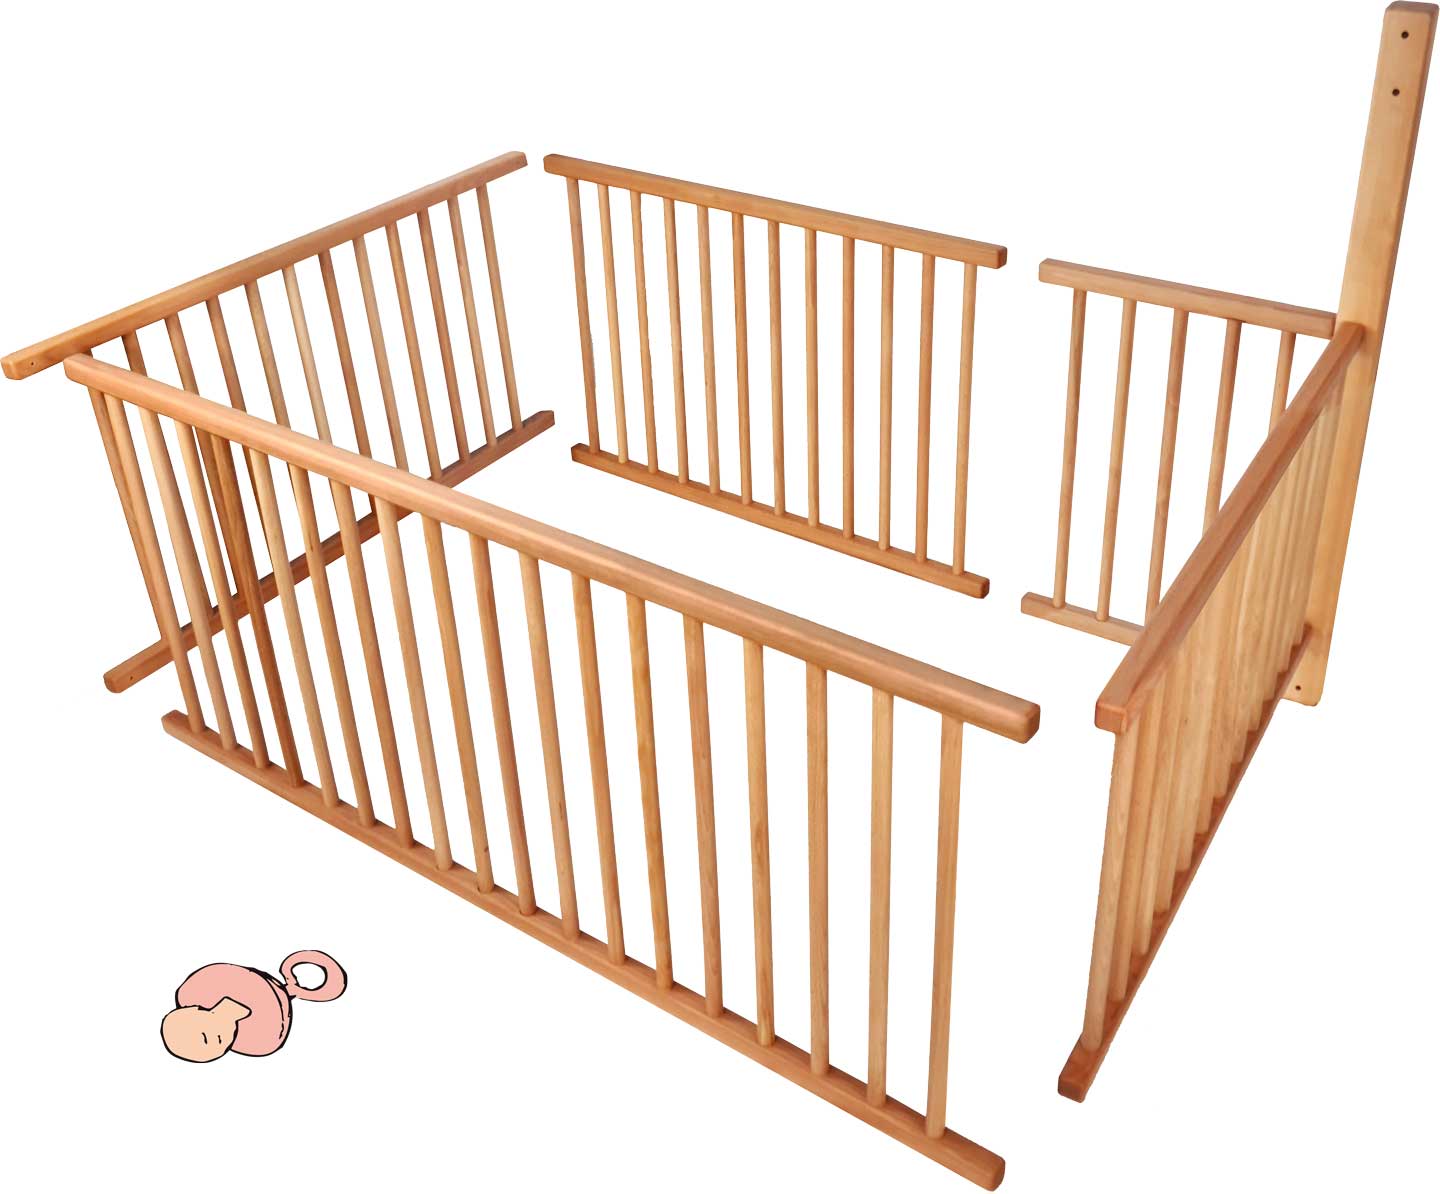 Conjunt de reixeta per a nadons per a lliteres amb peus estàndard (196 cm) i posició de l'escala A per a 3/4 de la superfície estirada incl. biga addicional requerida **